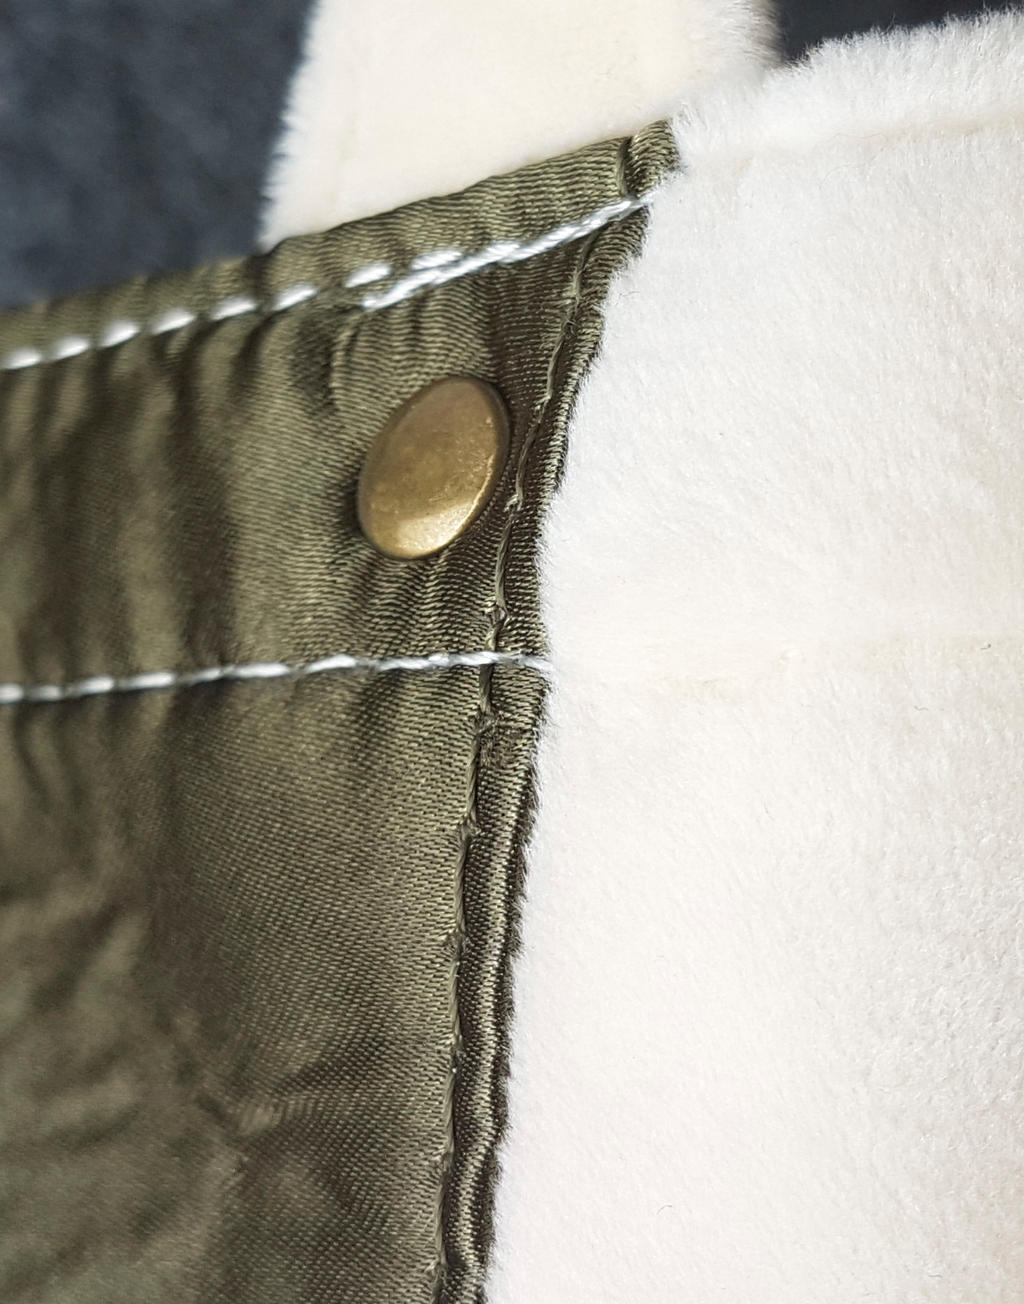  Kiyomi Satin + Velvet Tote Bag in Farbe Natural/Olive Green